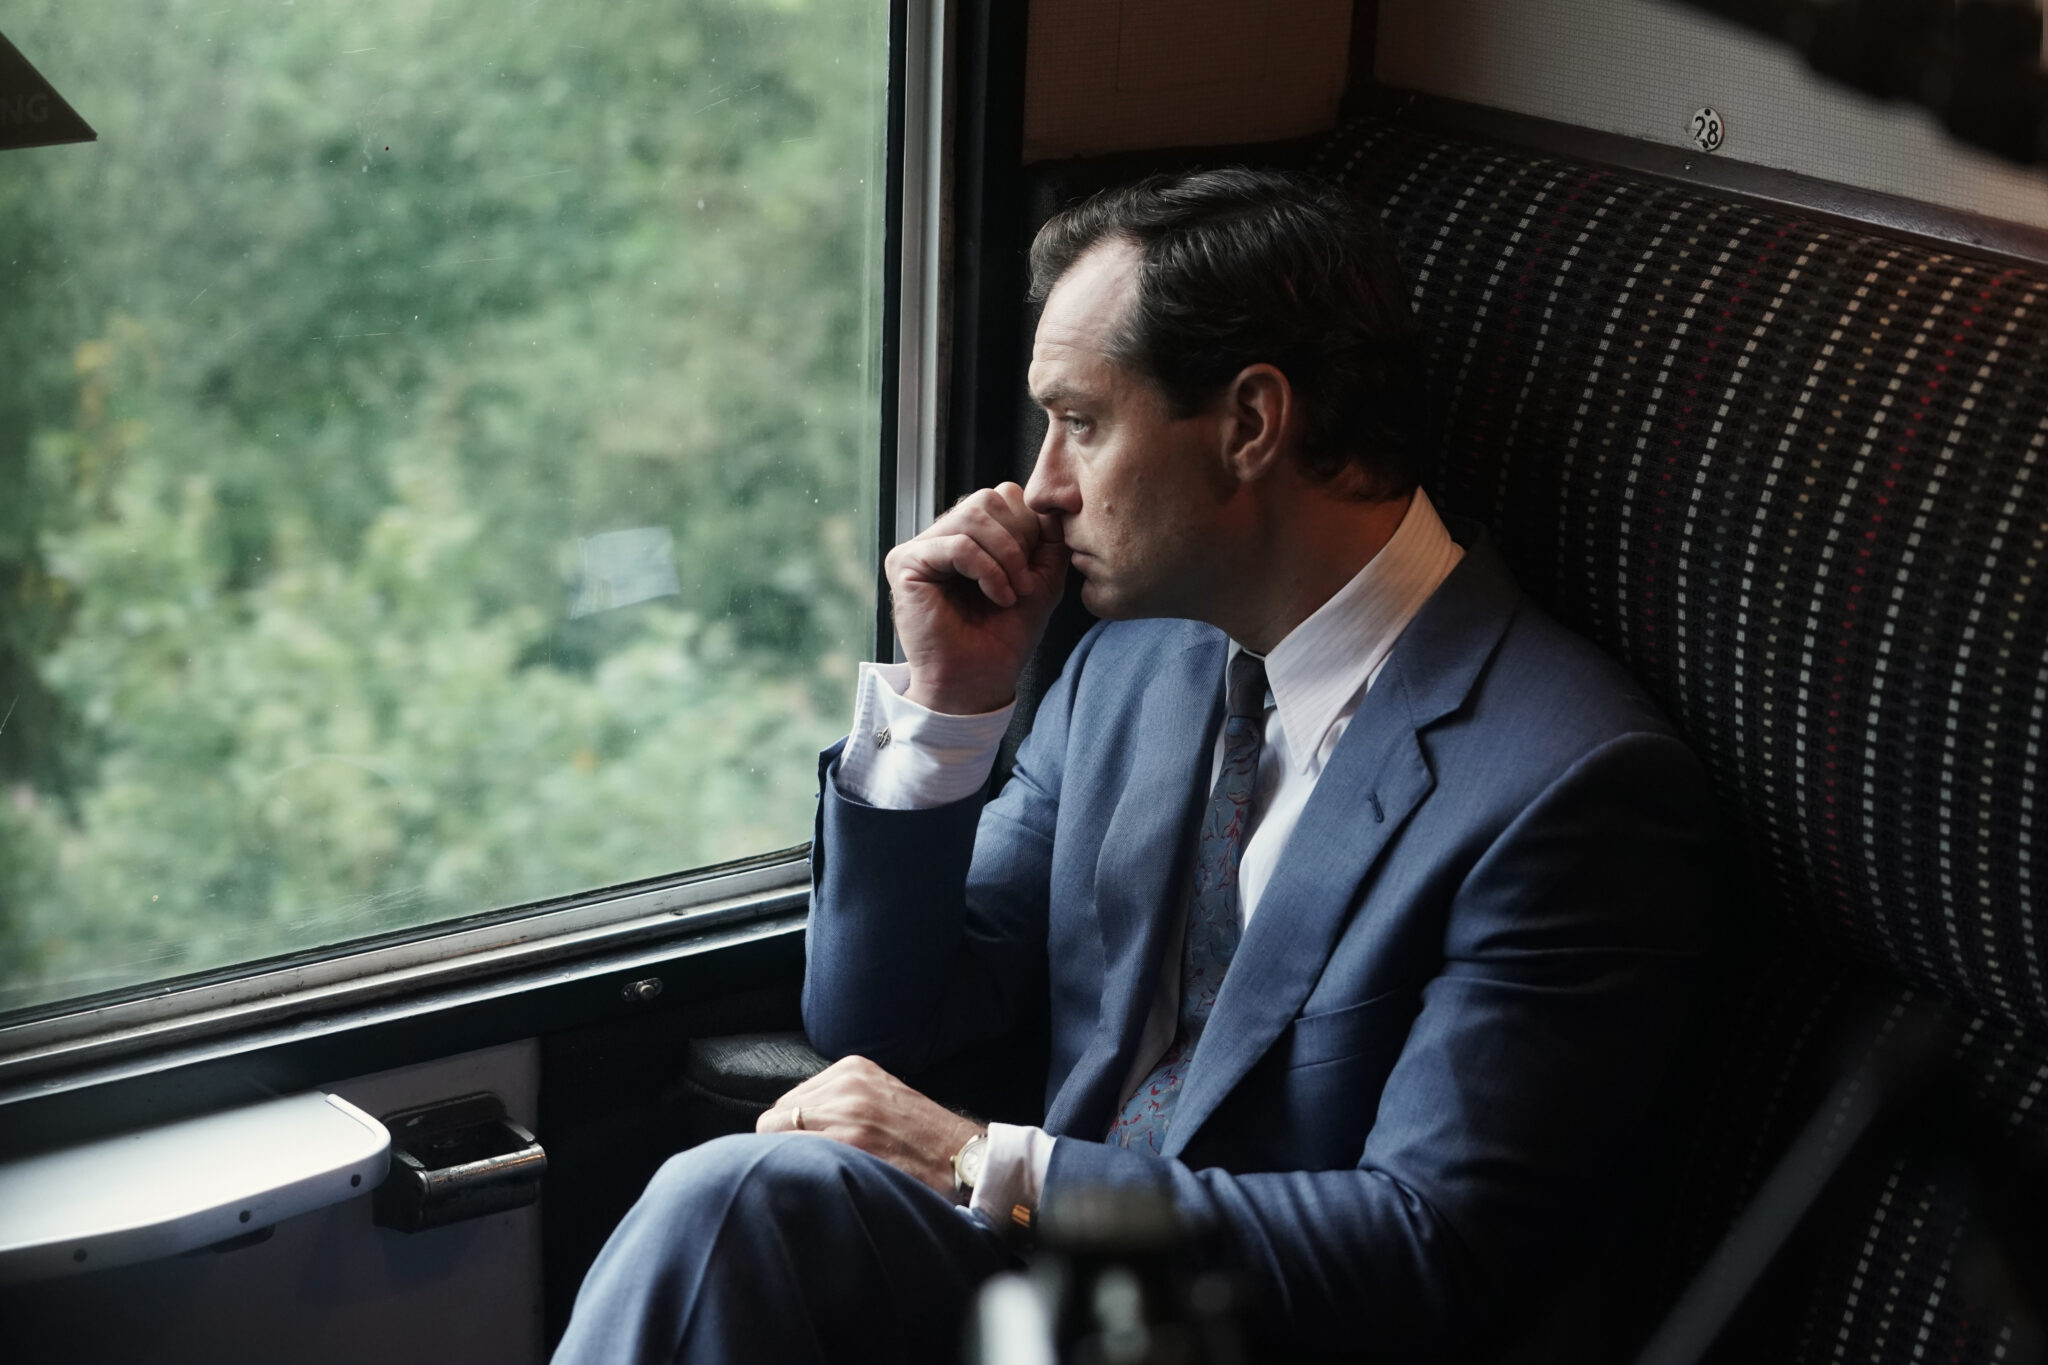 Jude Law sitzt in einem Zug. Er trägt Anzug und blickt gedankenverloren aus dem Fenster. The Nest